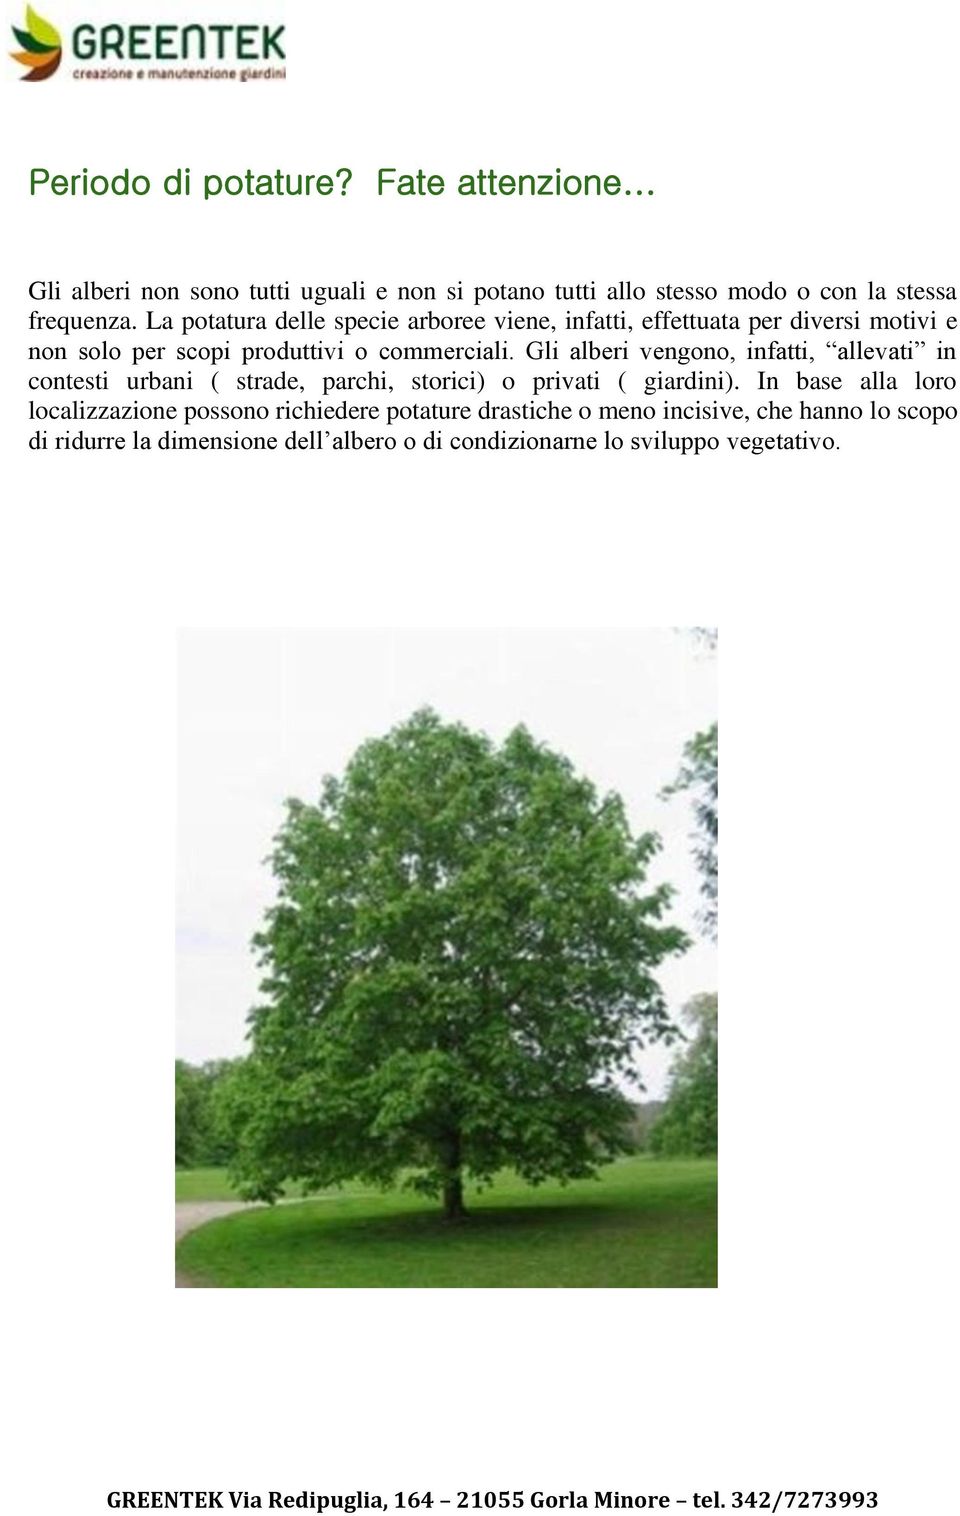 Gli alberi vengono, infatti, allevati in contesti urbani ( strade, parchi, storici) o privati ( giardini).